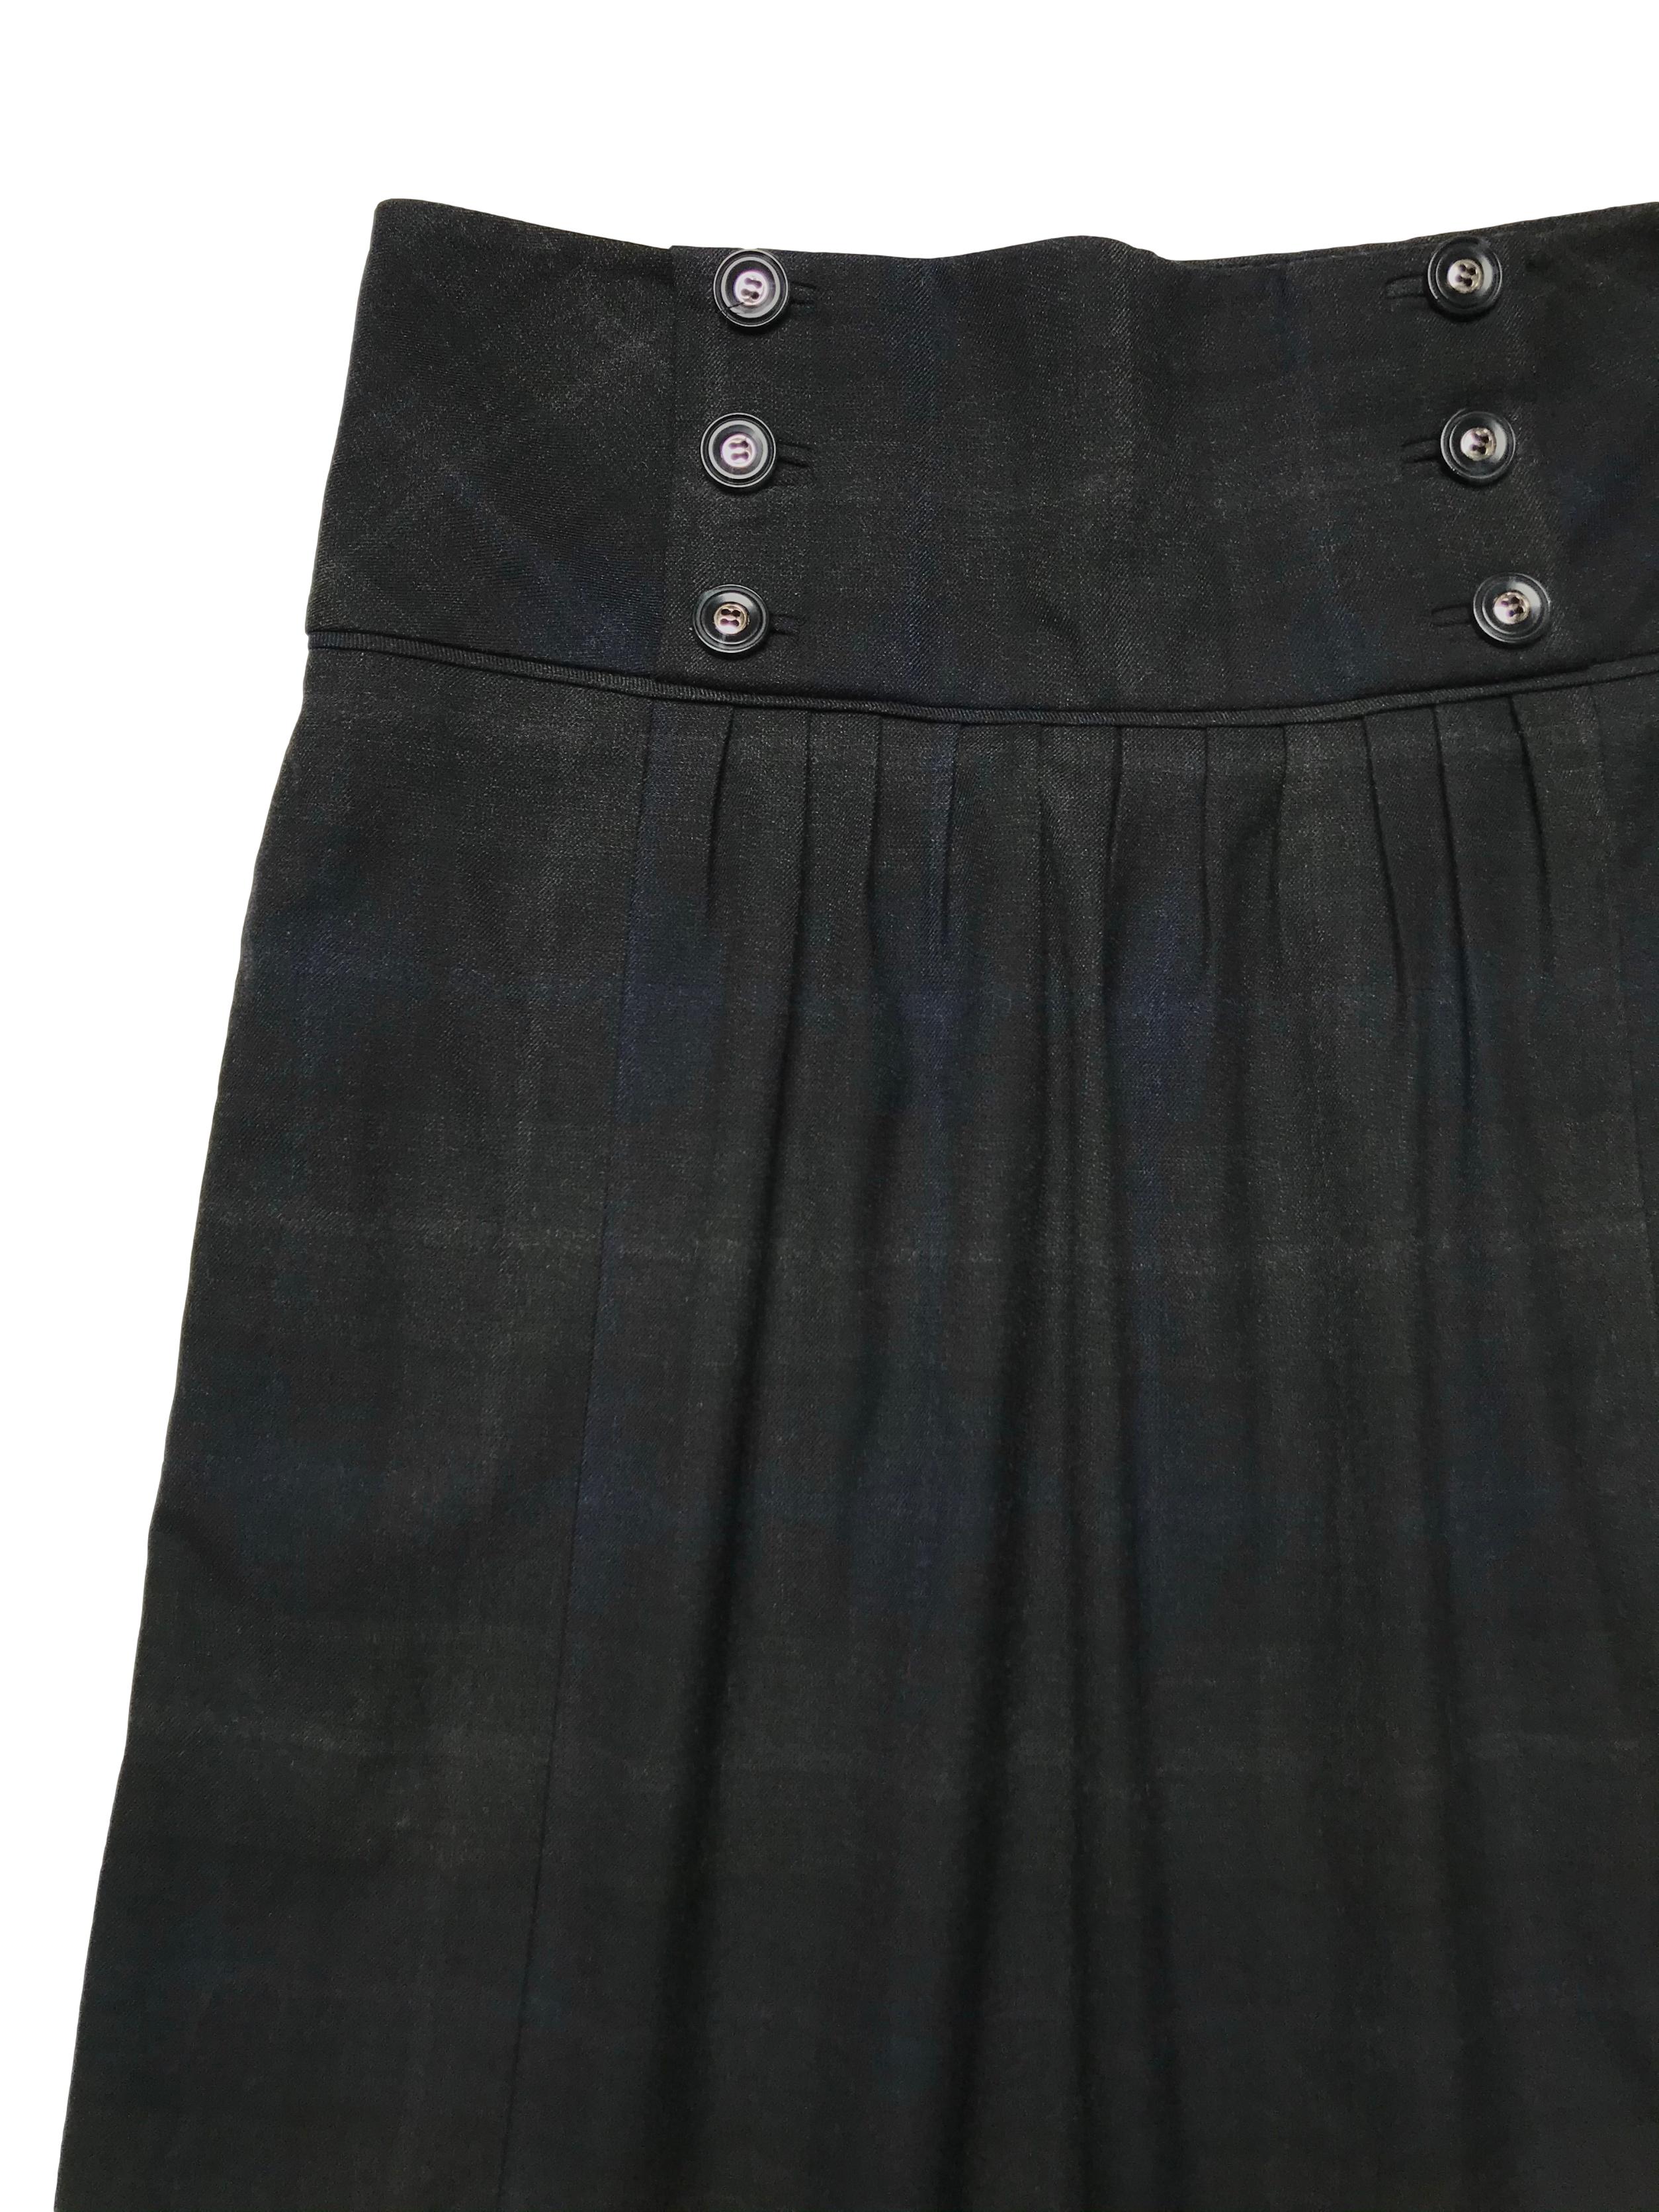 Falda Mango a cuadros negros y azules, tela tipo sastre con forro, pretina ancha con botones, bolsillos laterales y cierre al lado. Cintura 72cm Largo 55cm. Precio original S/ 219